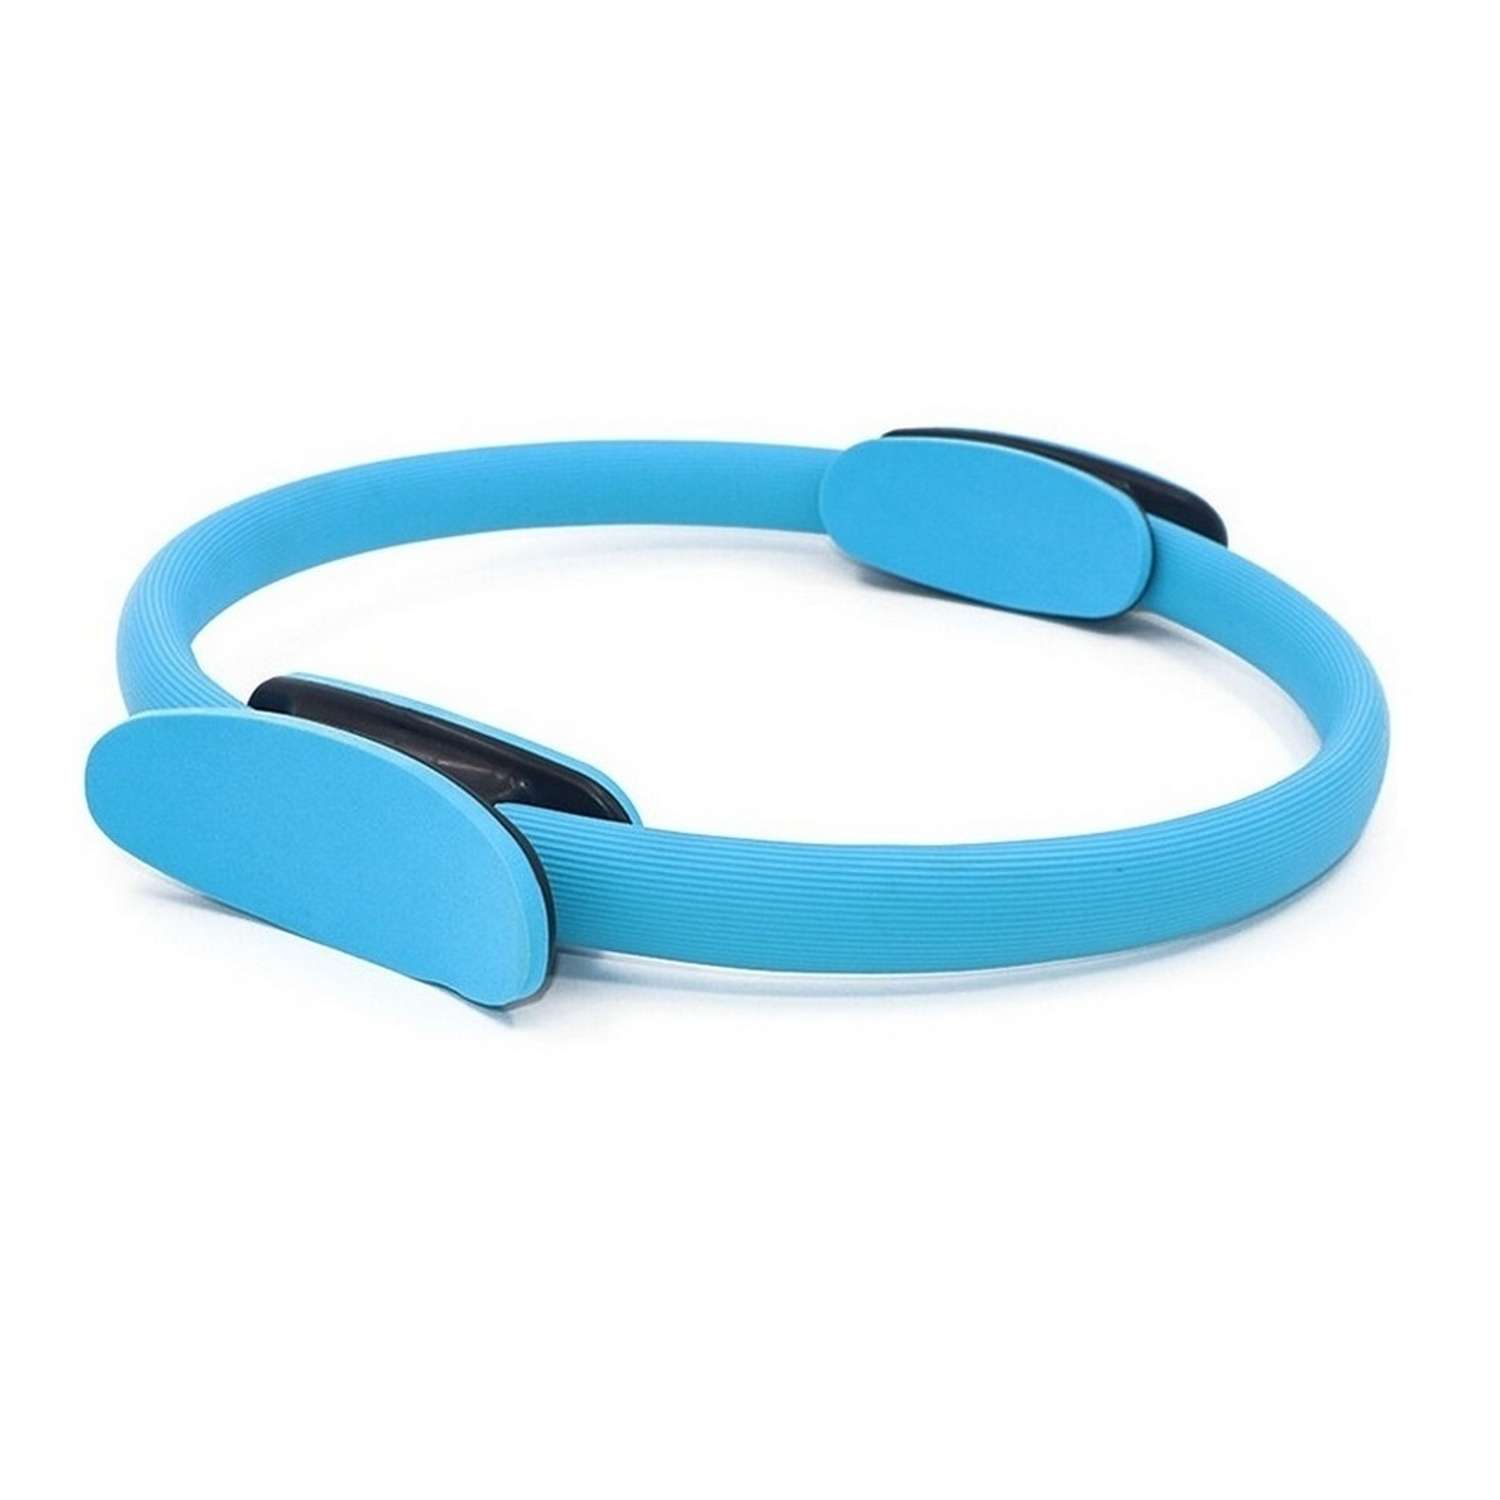 Изотоническое кольцо STRONG BODY обруч для йоги и пилатес d 38 см голубое - фото 3